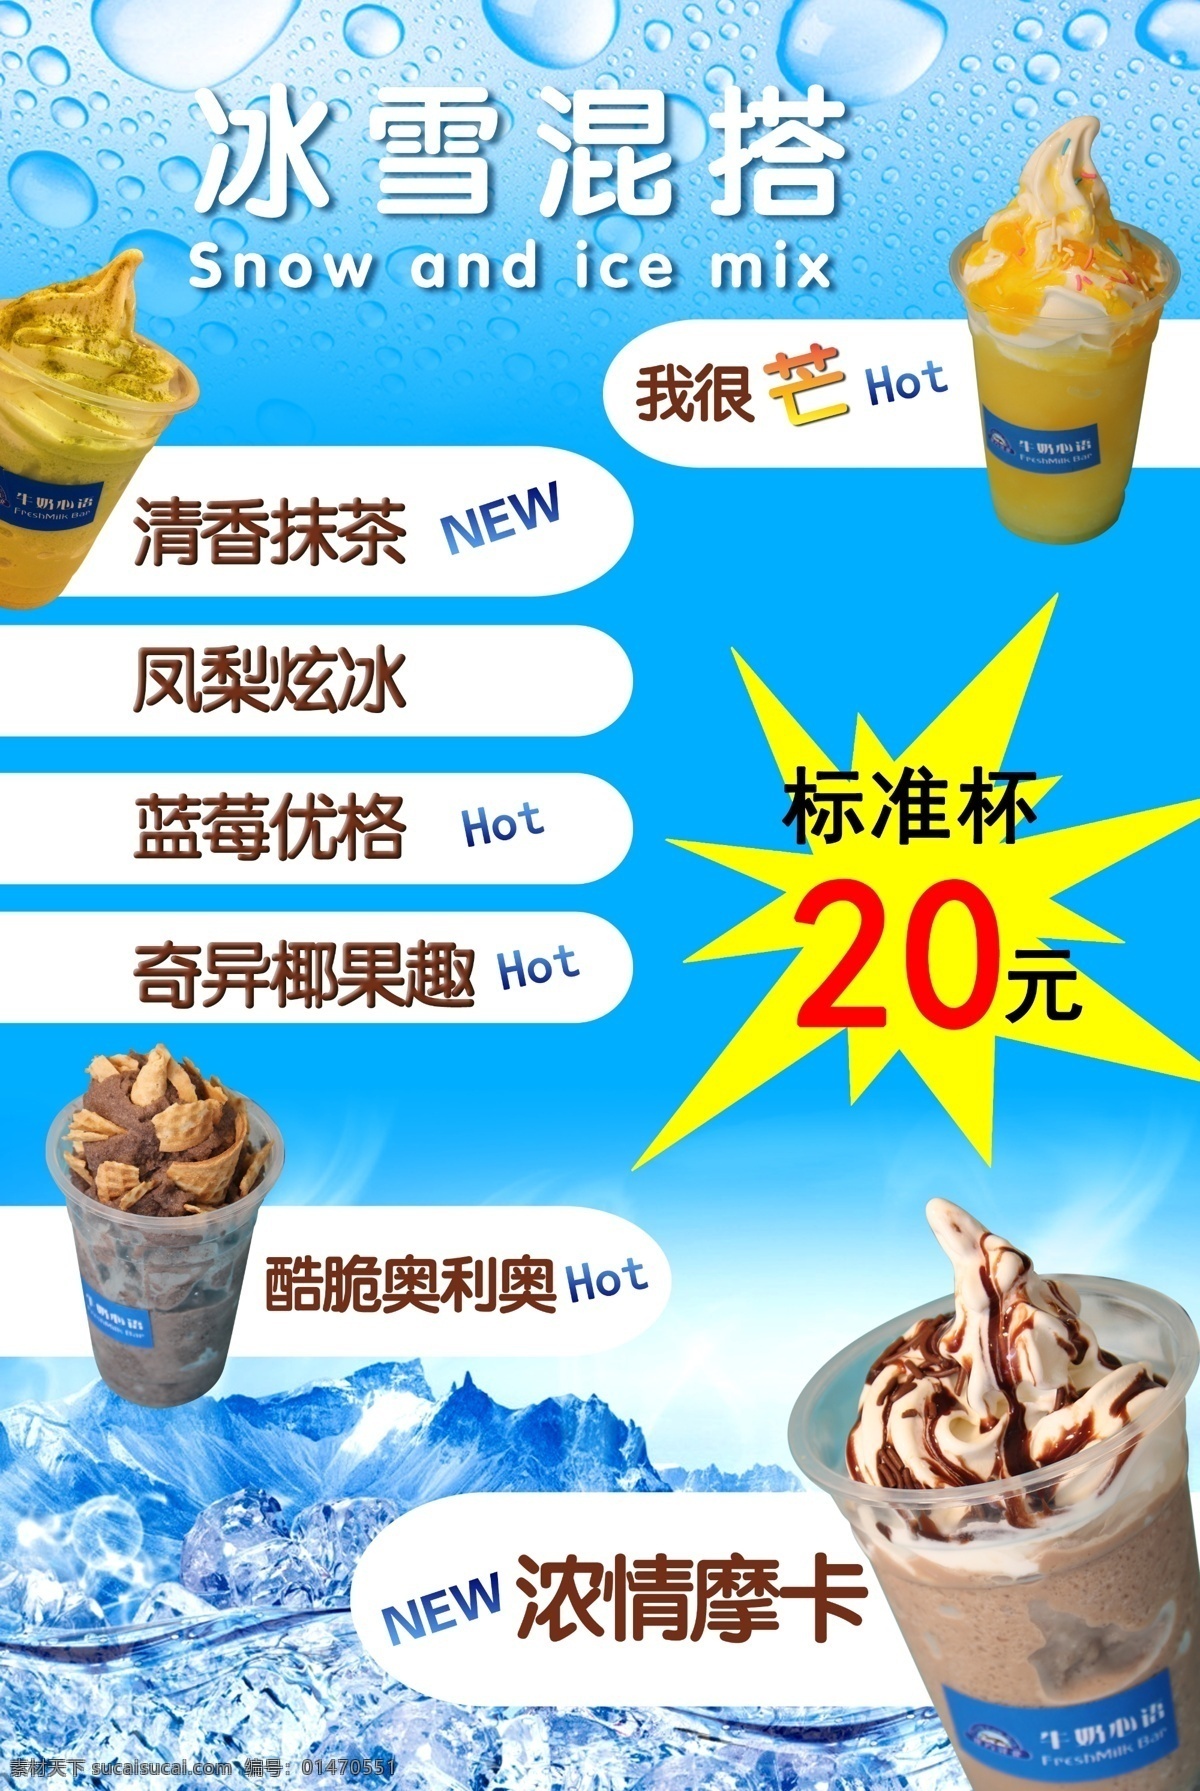 冰雪 摩卡 冷饮 宣传单 抹茶 奶茶 冰 雪 促销 冰激凌促销 dm宣传单